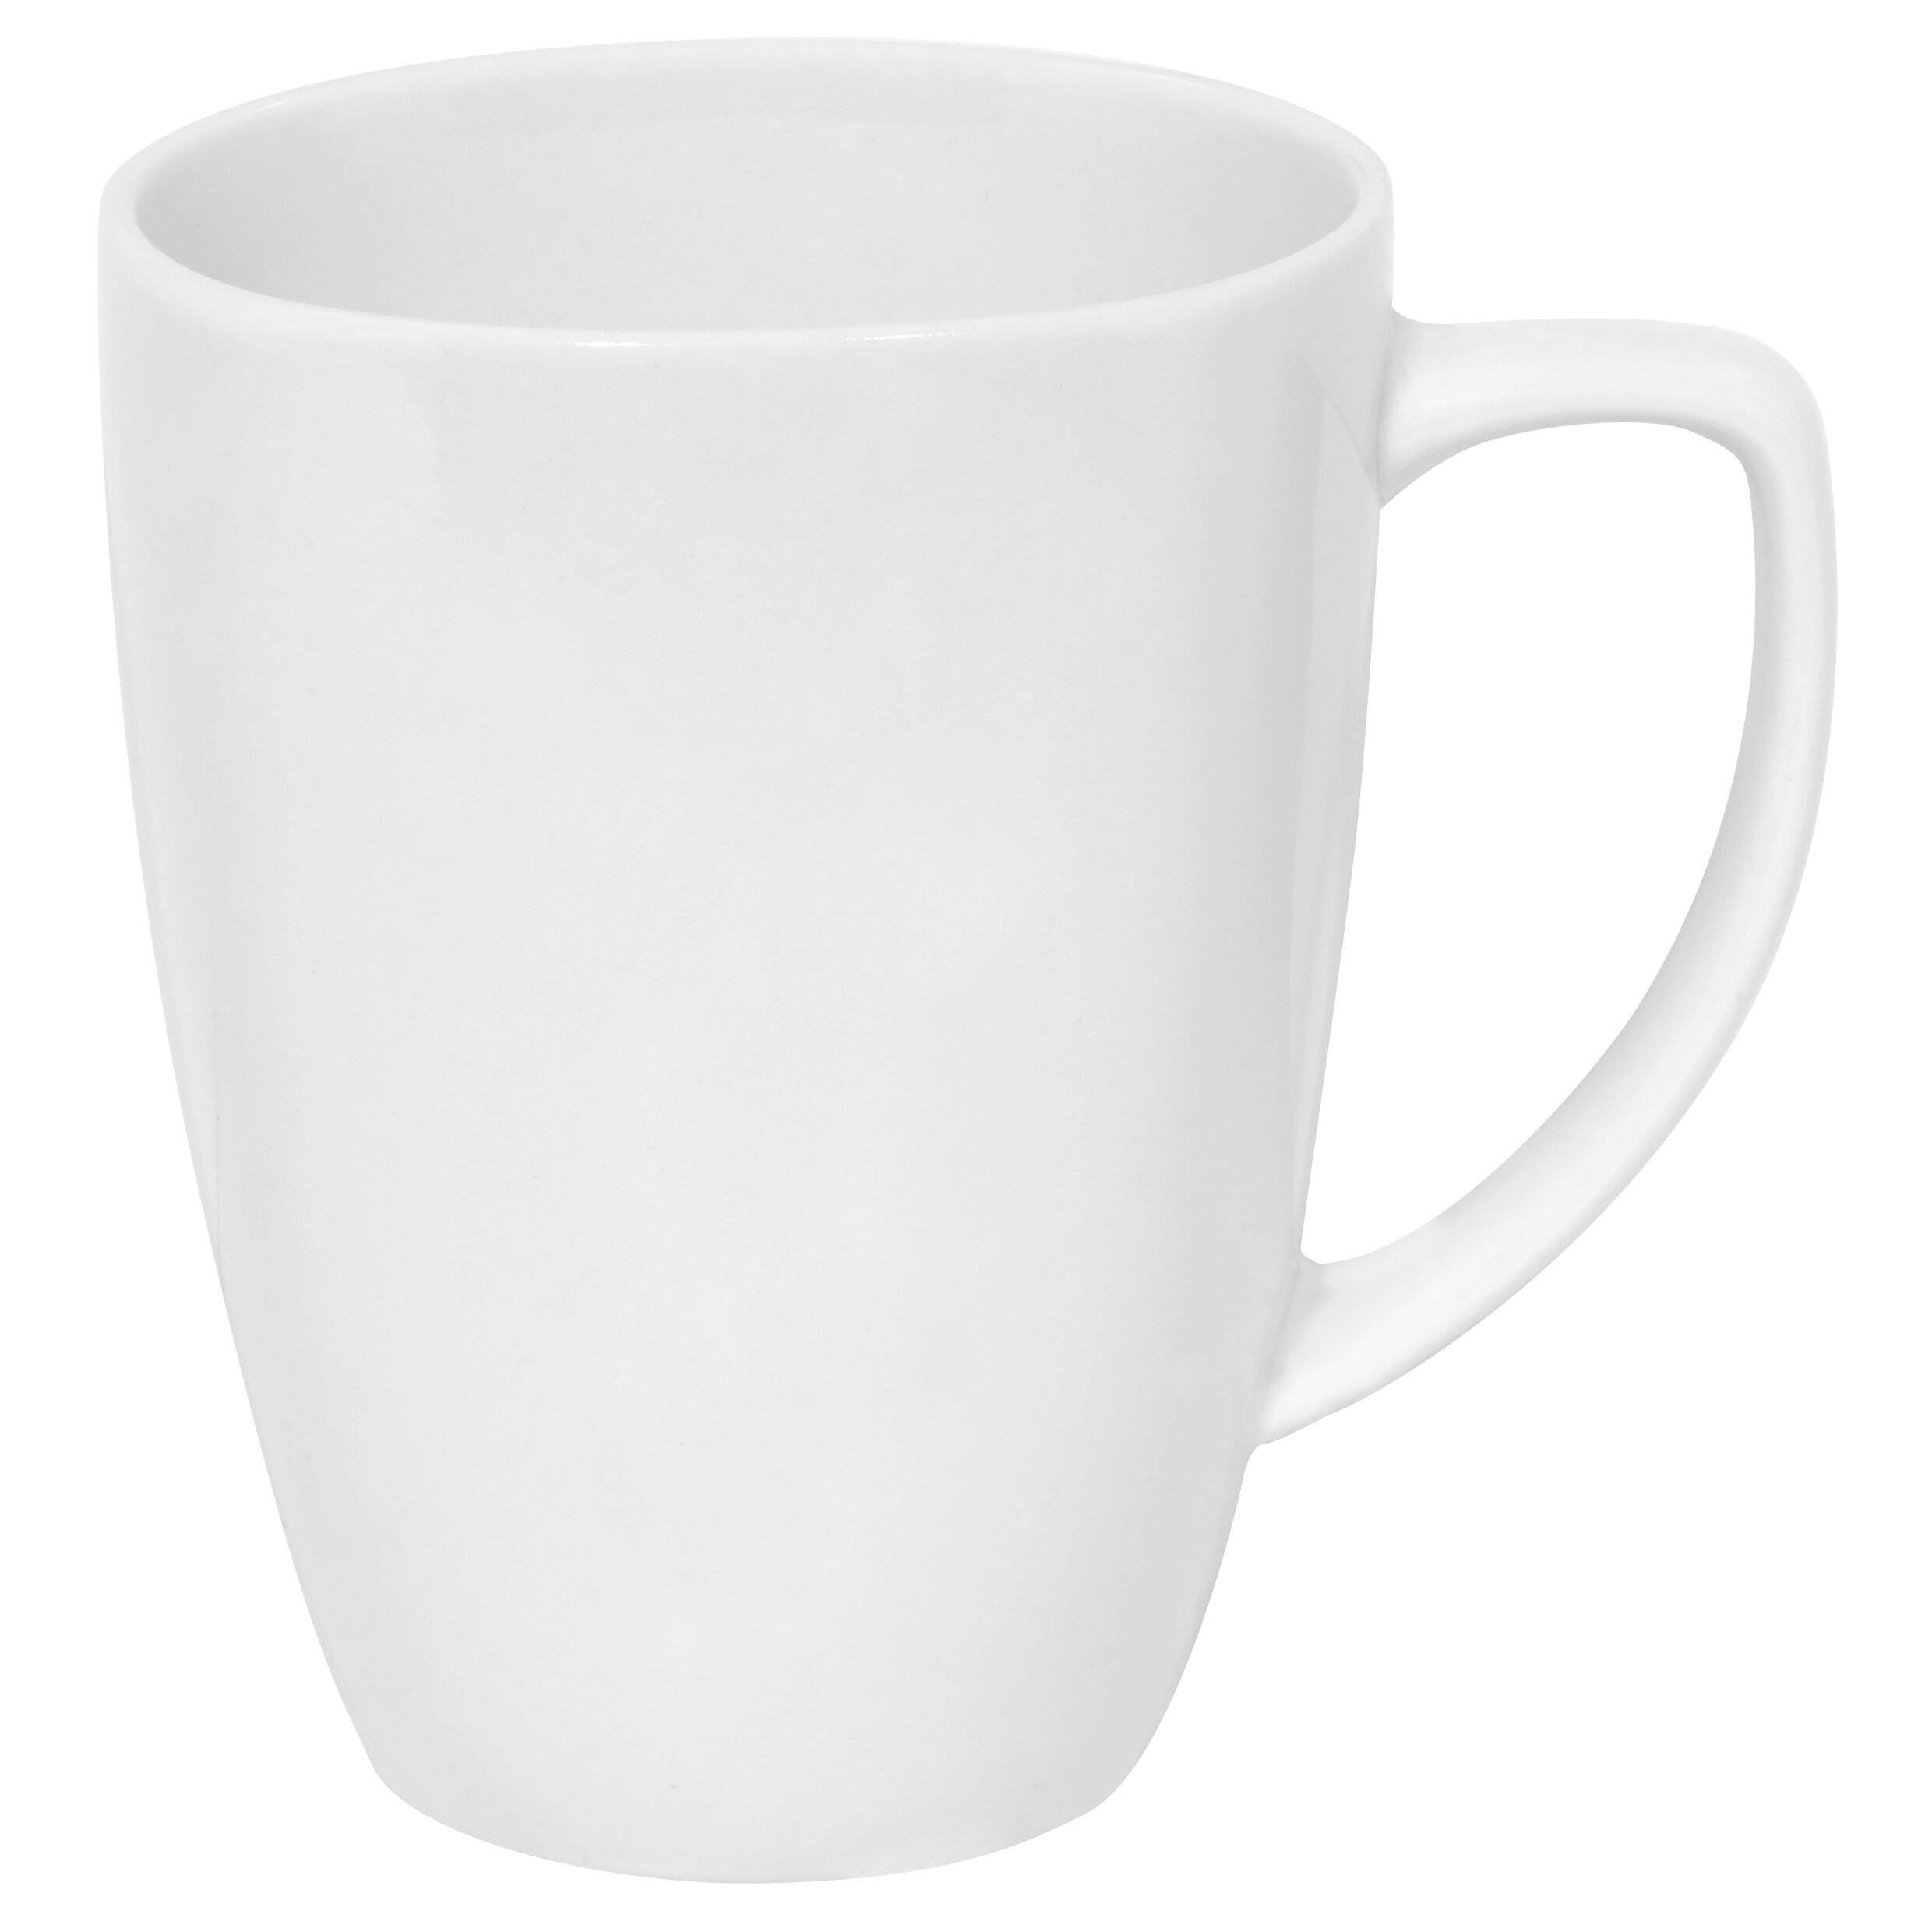 11 oz I Threw My Pie For You Ceramic Coffee Tea Mug Cup 